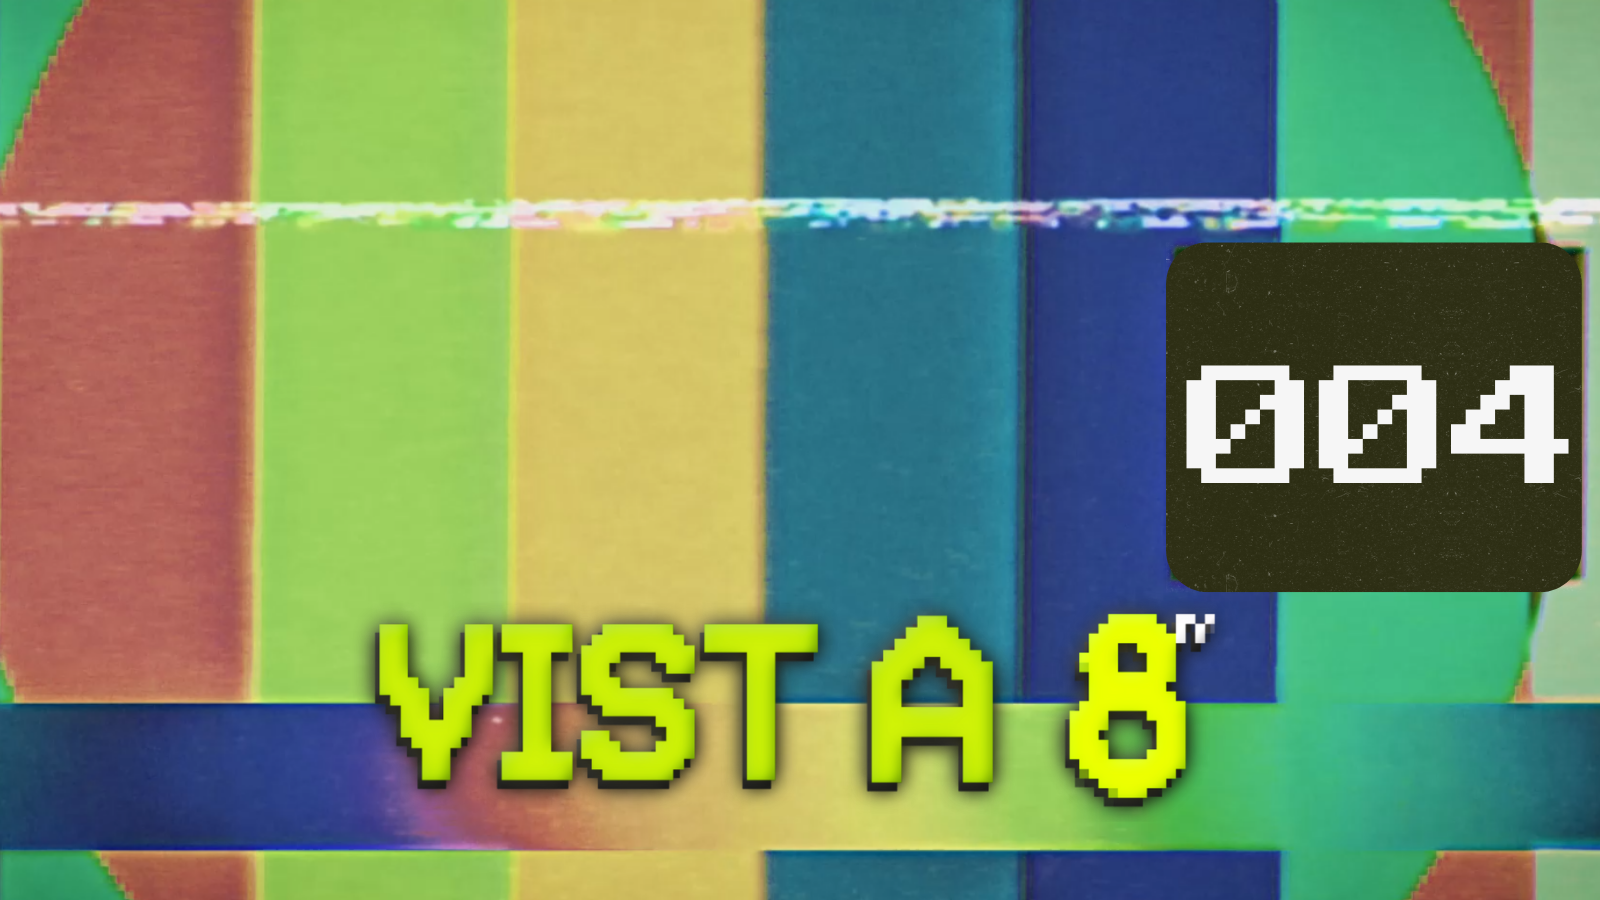 VIST A 8TV - EPISODI 4